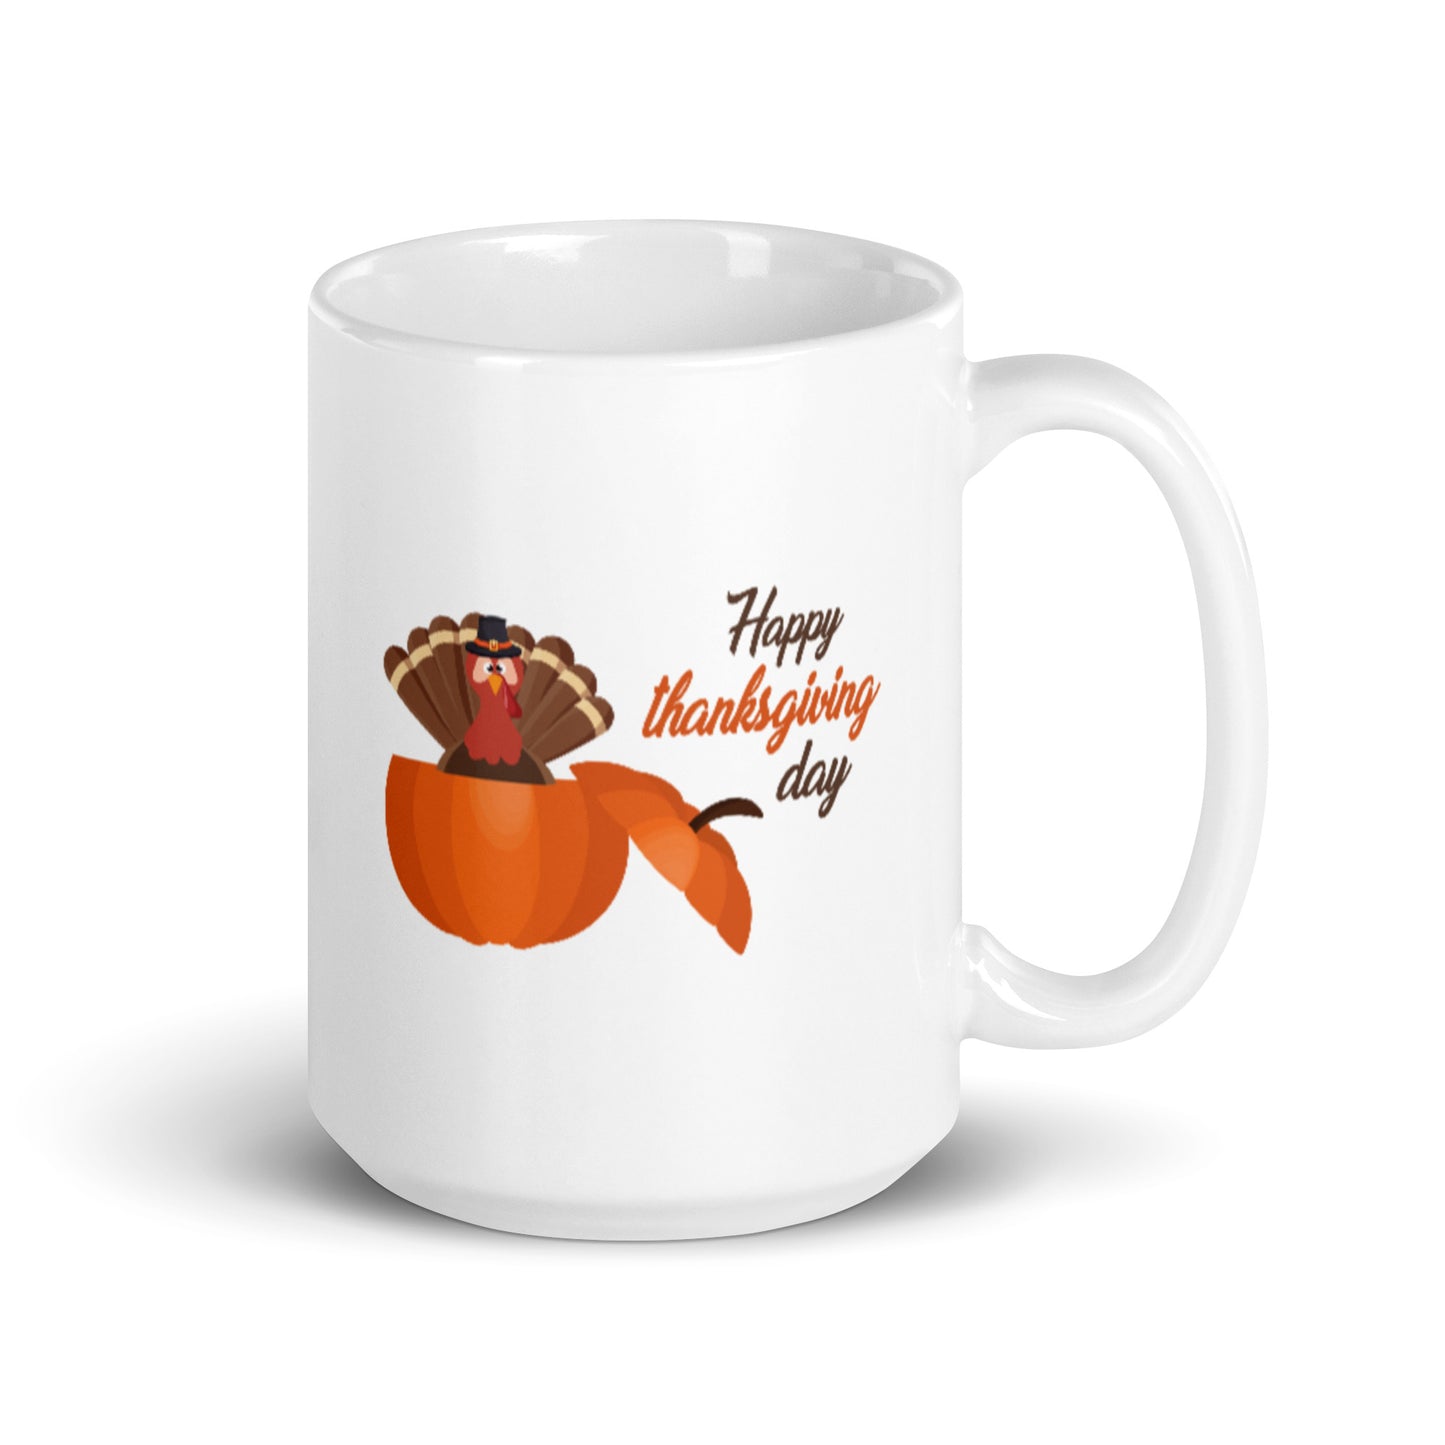 Happy Thanksgiving Day White glossy mug